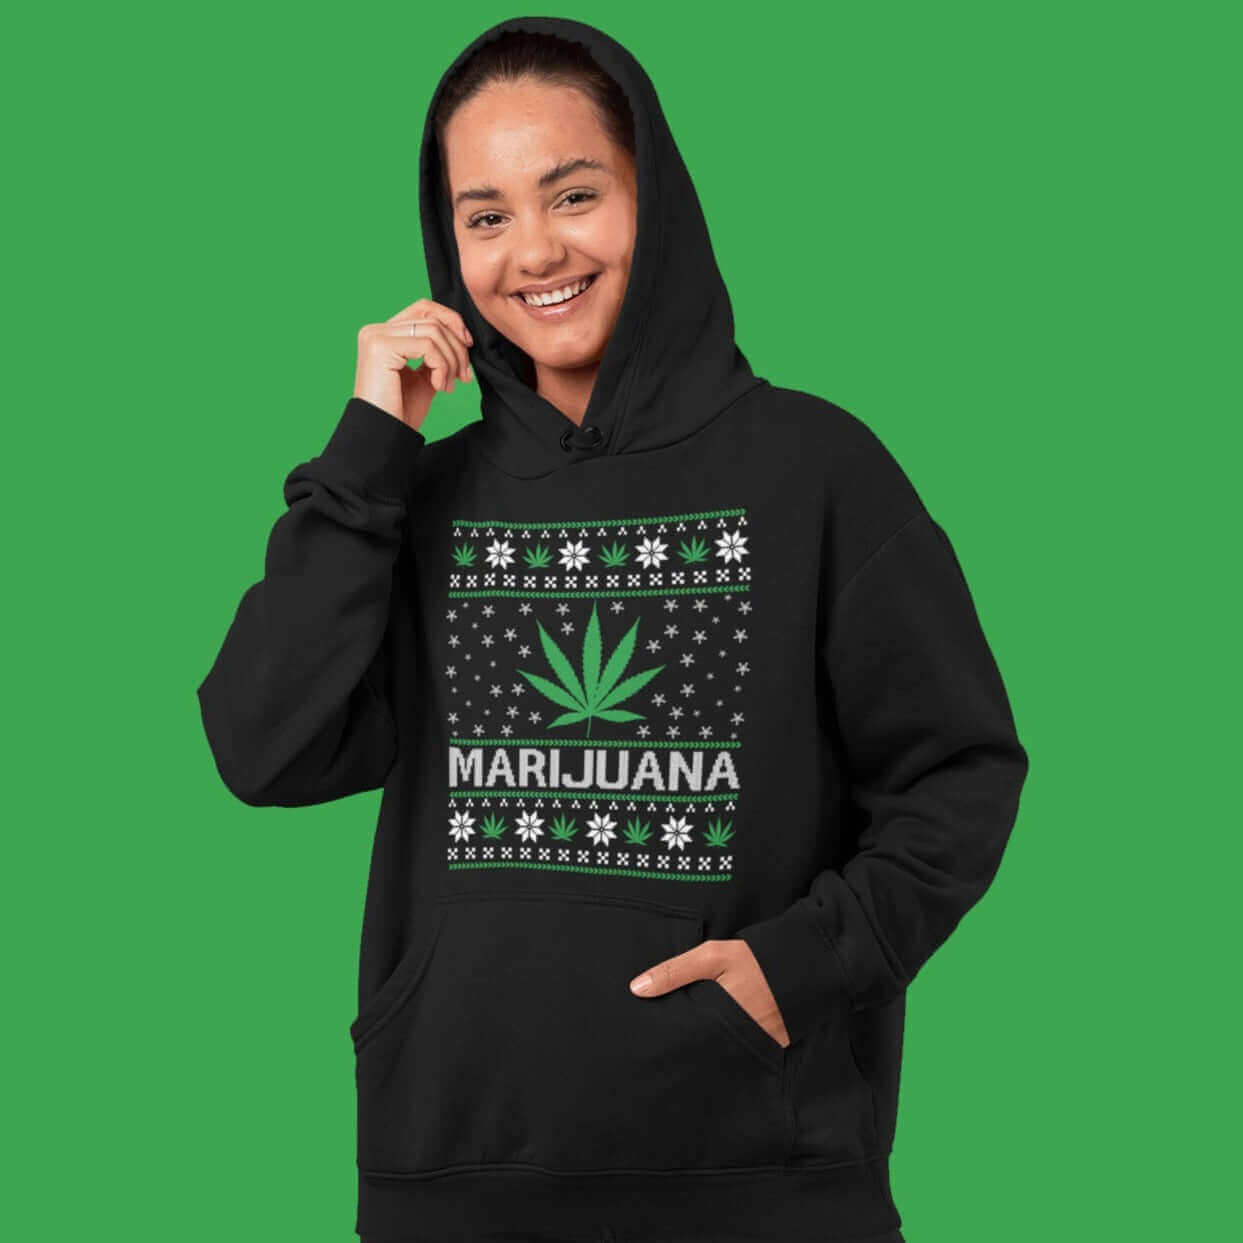 woman wearing marijuana leaf printed hooded sweatshirt